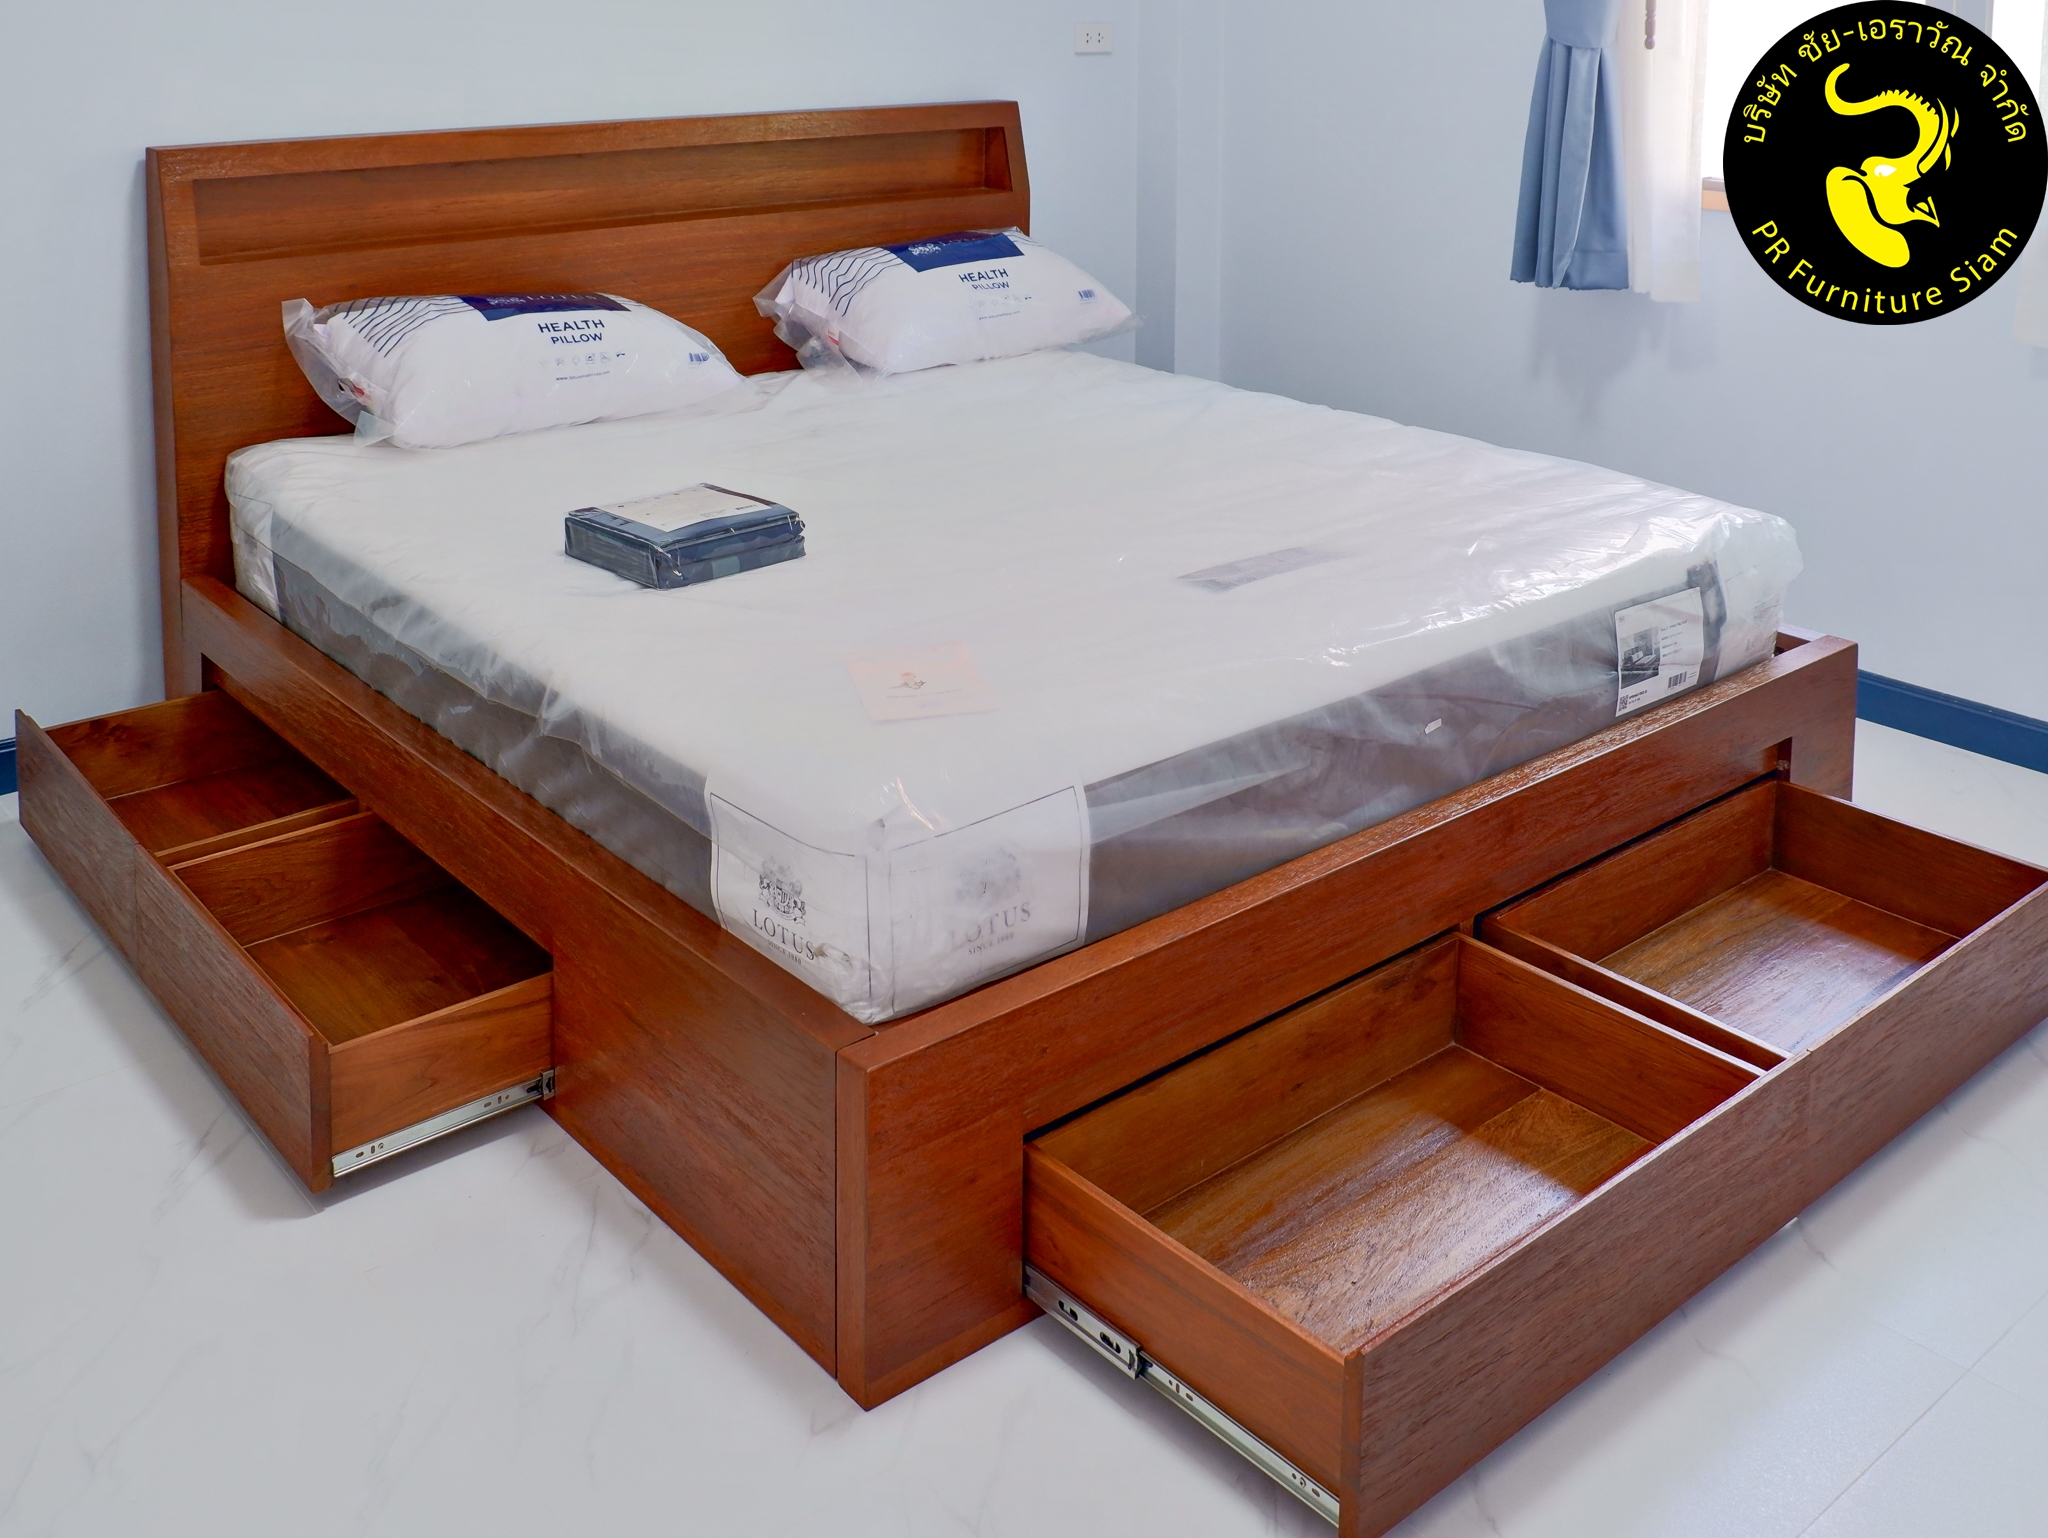 เตียงไม้สักจริงทั้งตัว 6 ฟุต พร้อมลิ้นชัก 6 ลิ้น ติดตั้งอย่างลงตัวในห้องนอนเล็ก